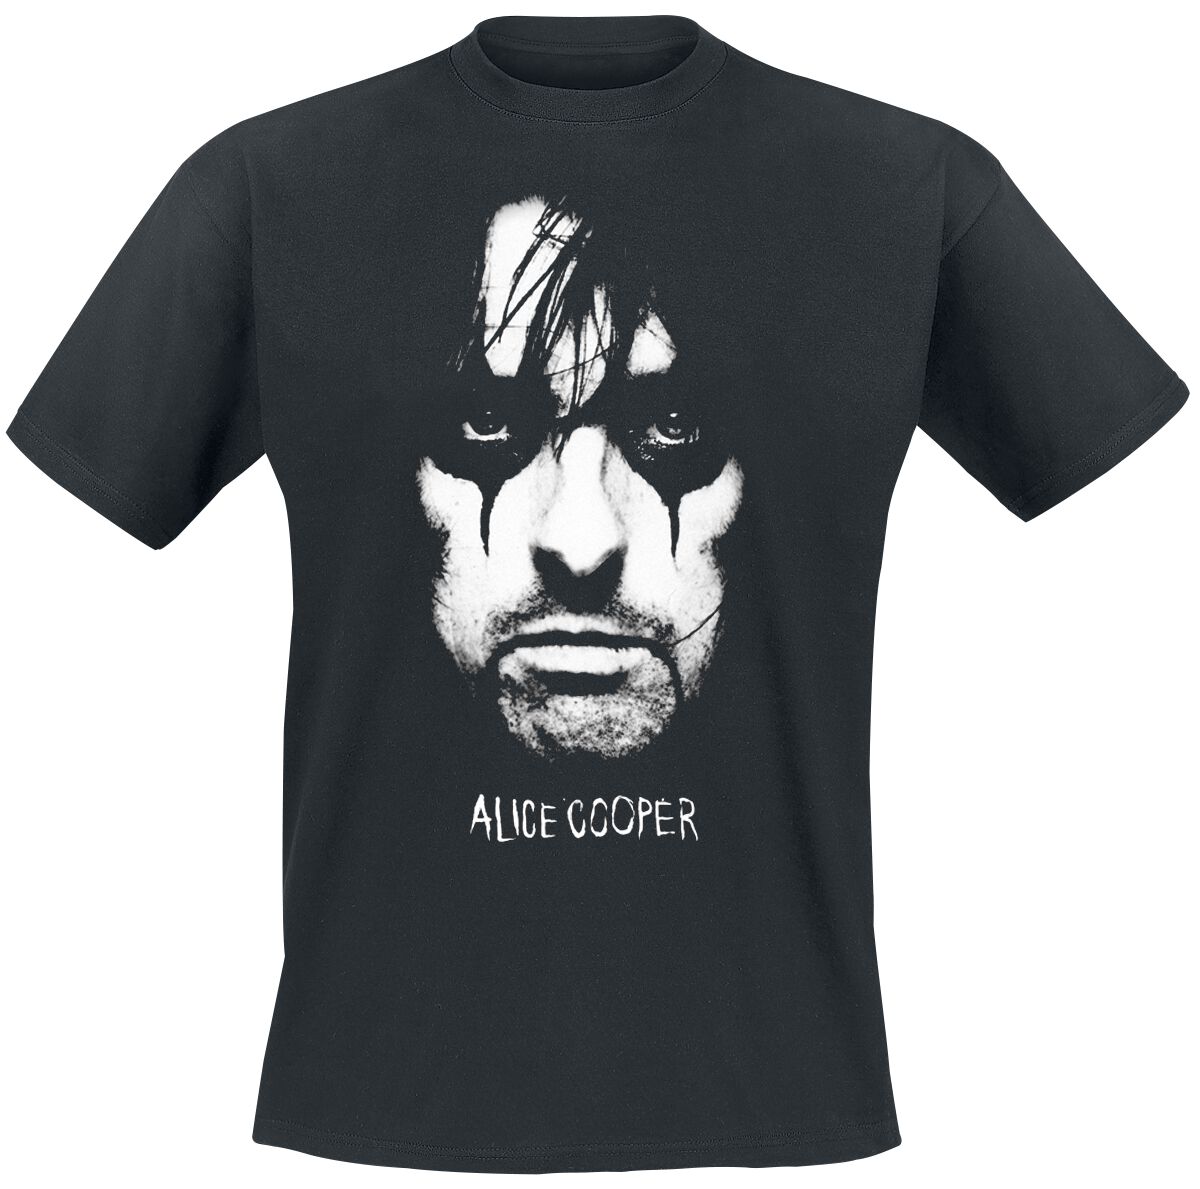 Alice Cooper T-Shirt - Portrait - S bis 4XL - für Männer - Größe 4XL - schwarz  - Lizenziertes Merchandise!